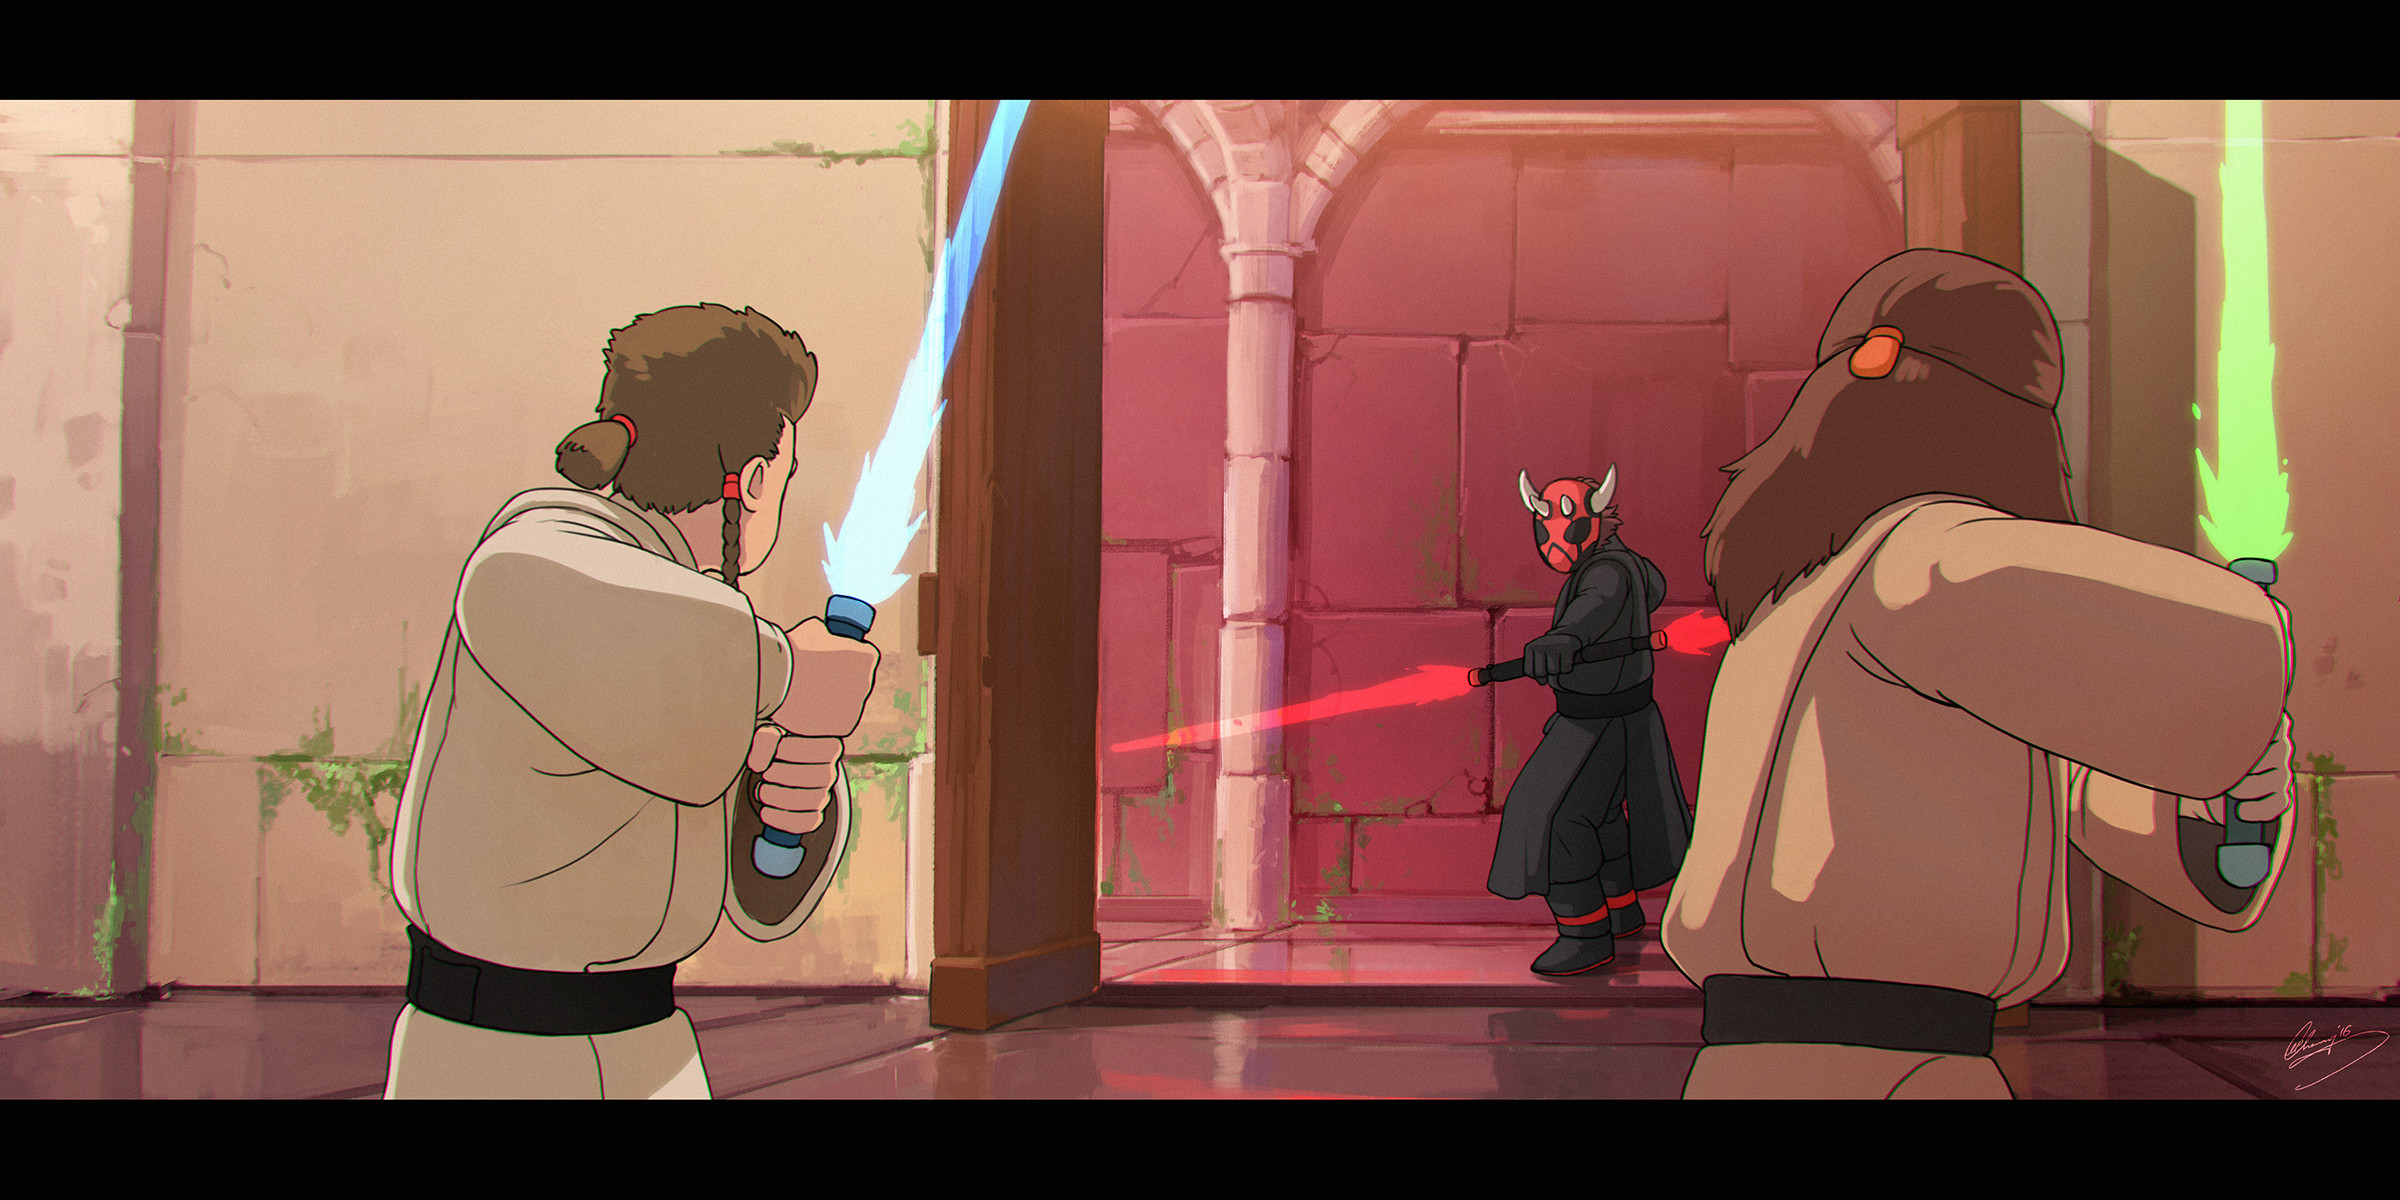 Star Wars Humor Studio Ghibli Lightsaber Jedi Sith Darth Maul Obi Wan Kenobi Qui Gon Jinn 2400x1200